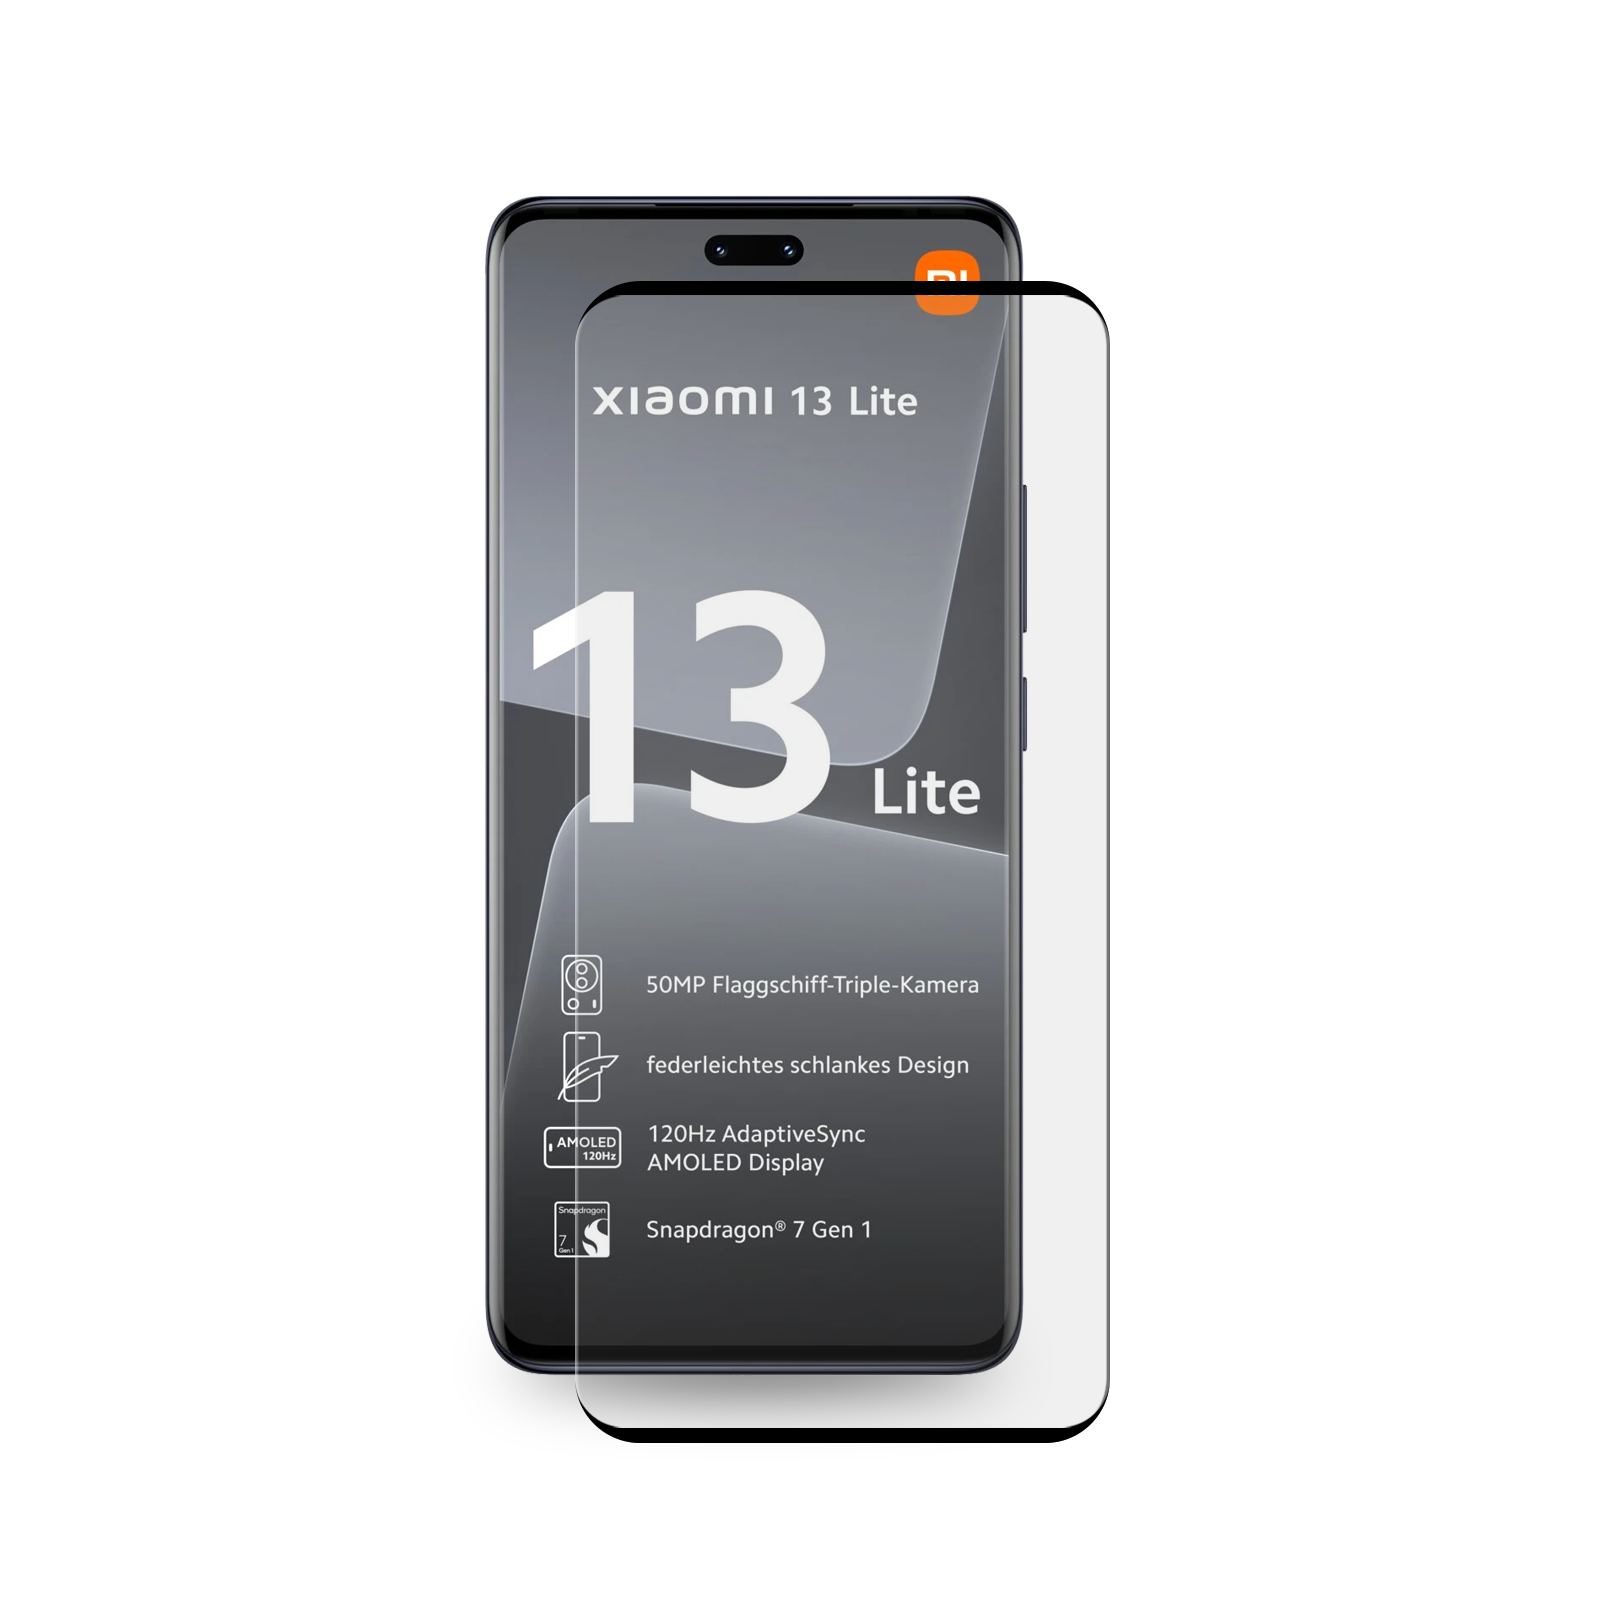 CURVED Lite) 13 Xiaomi Schutzglas HD 2x Panzerglas Displayschutzfolie(für 9H PROTECTORKING FULL KLAR